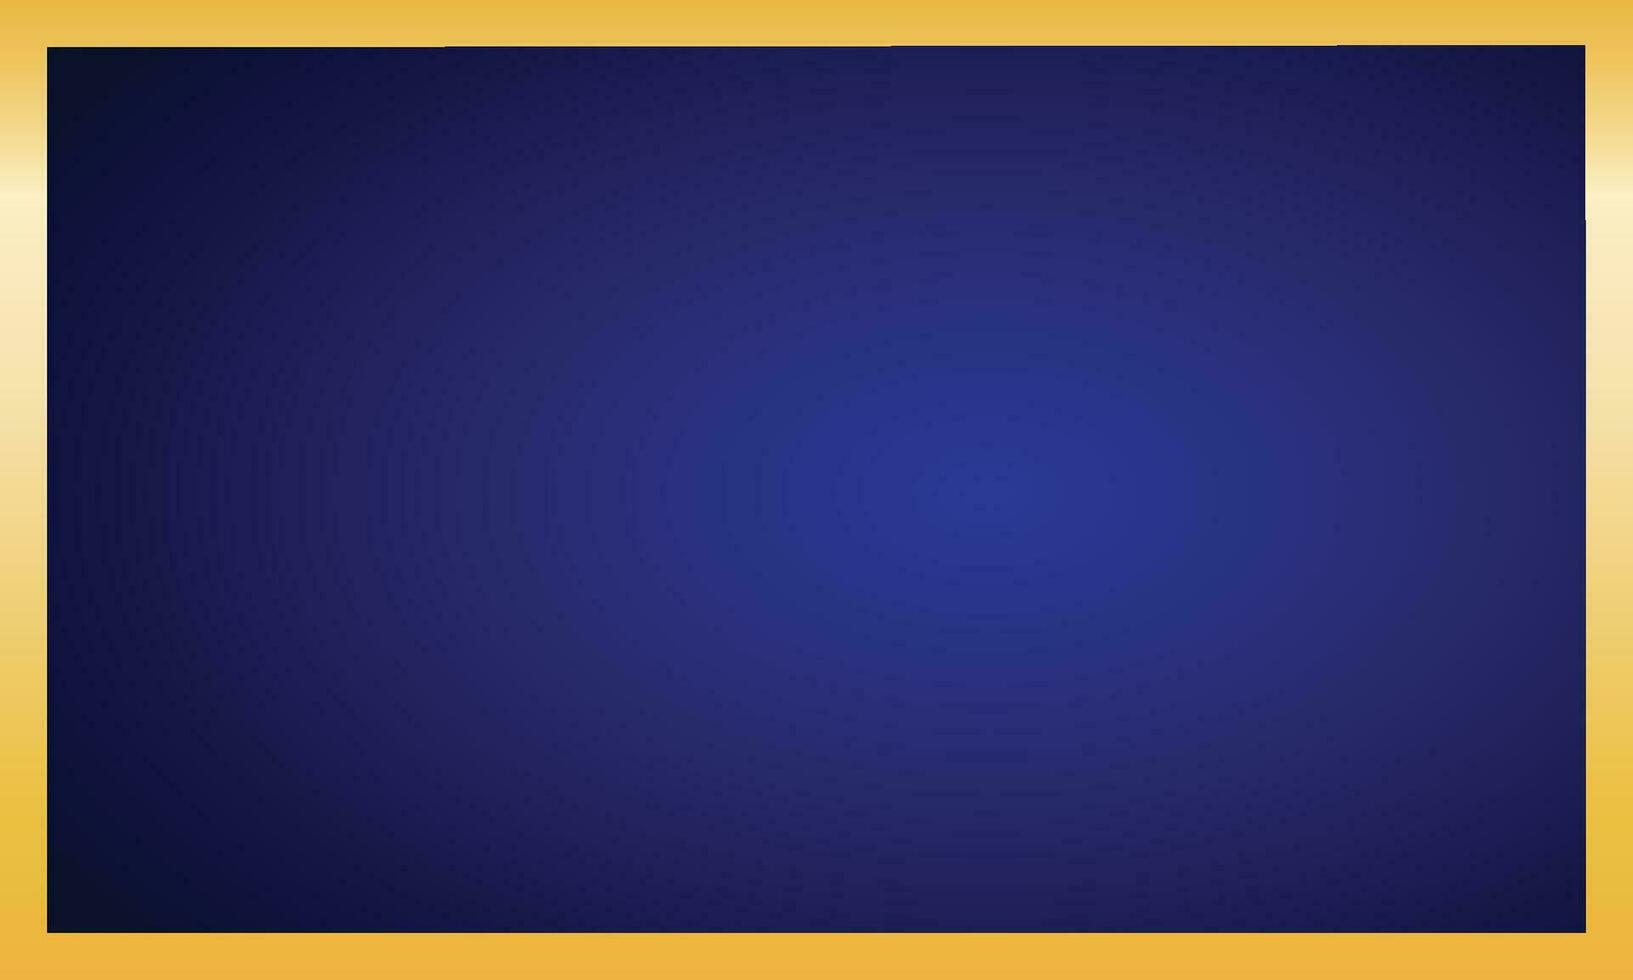 Vector golden frame design with blue background